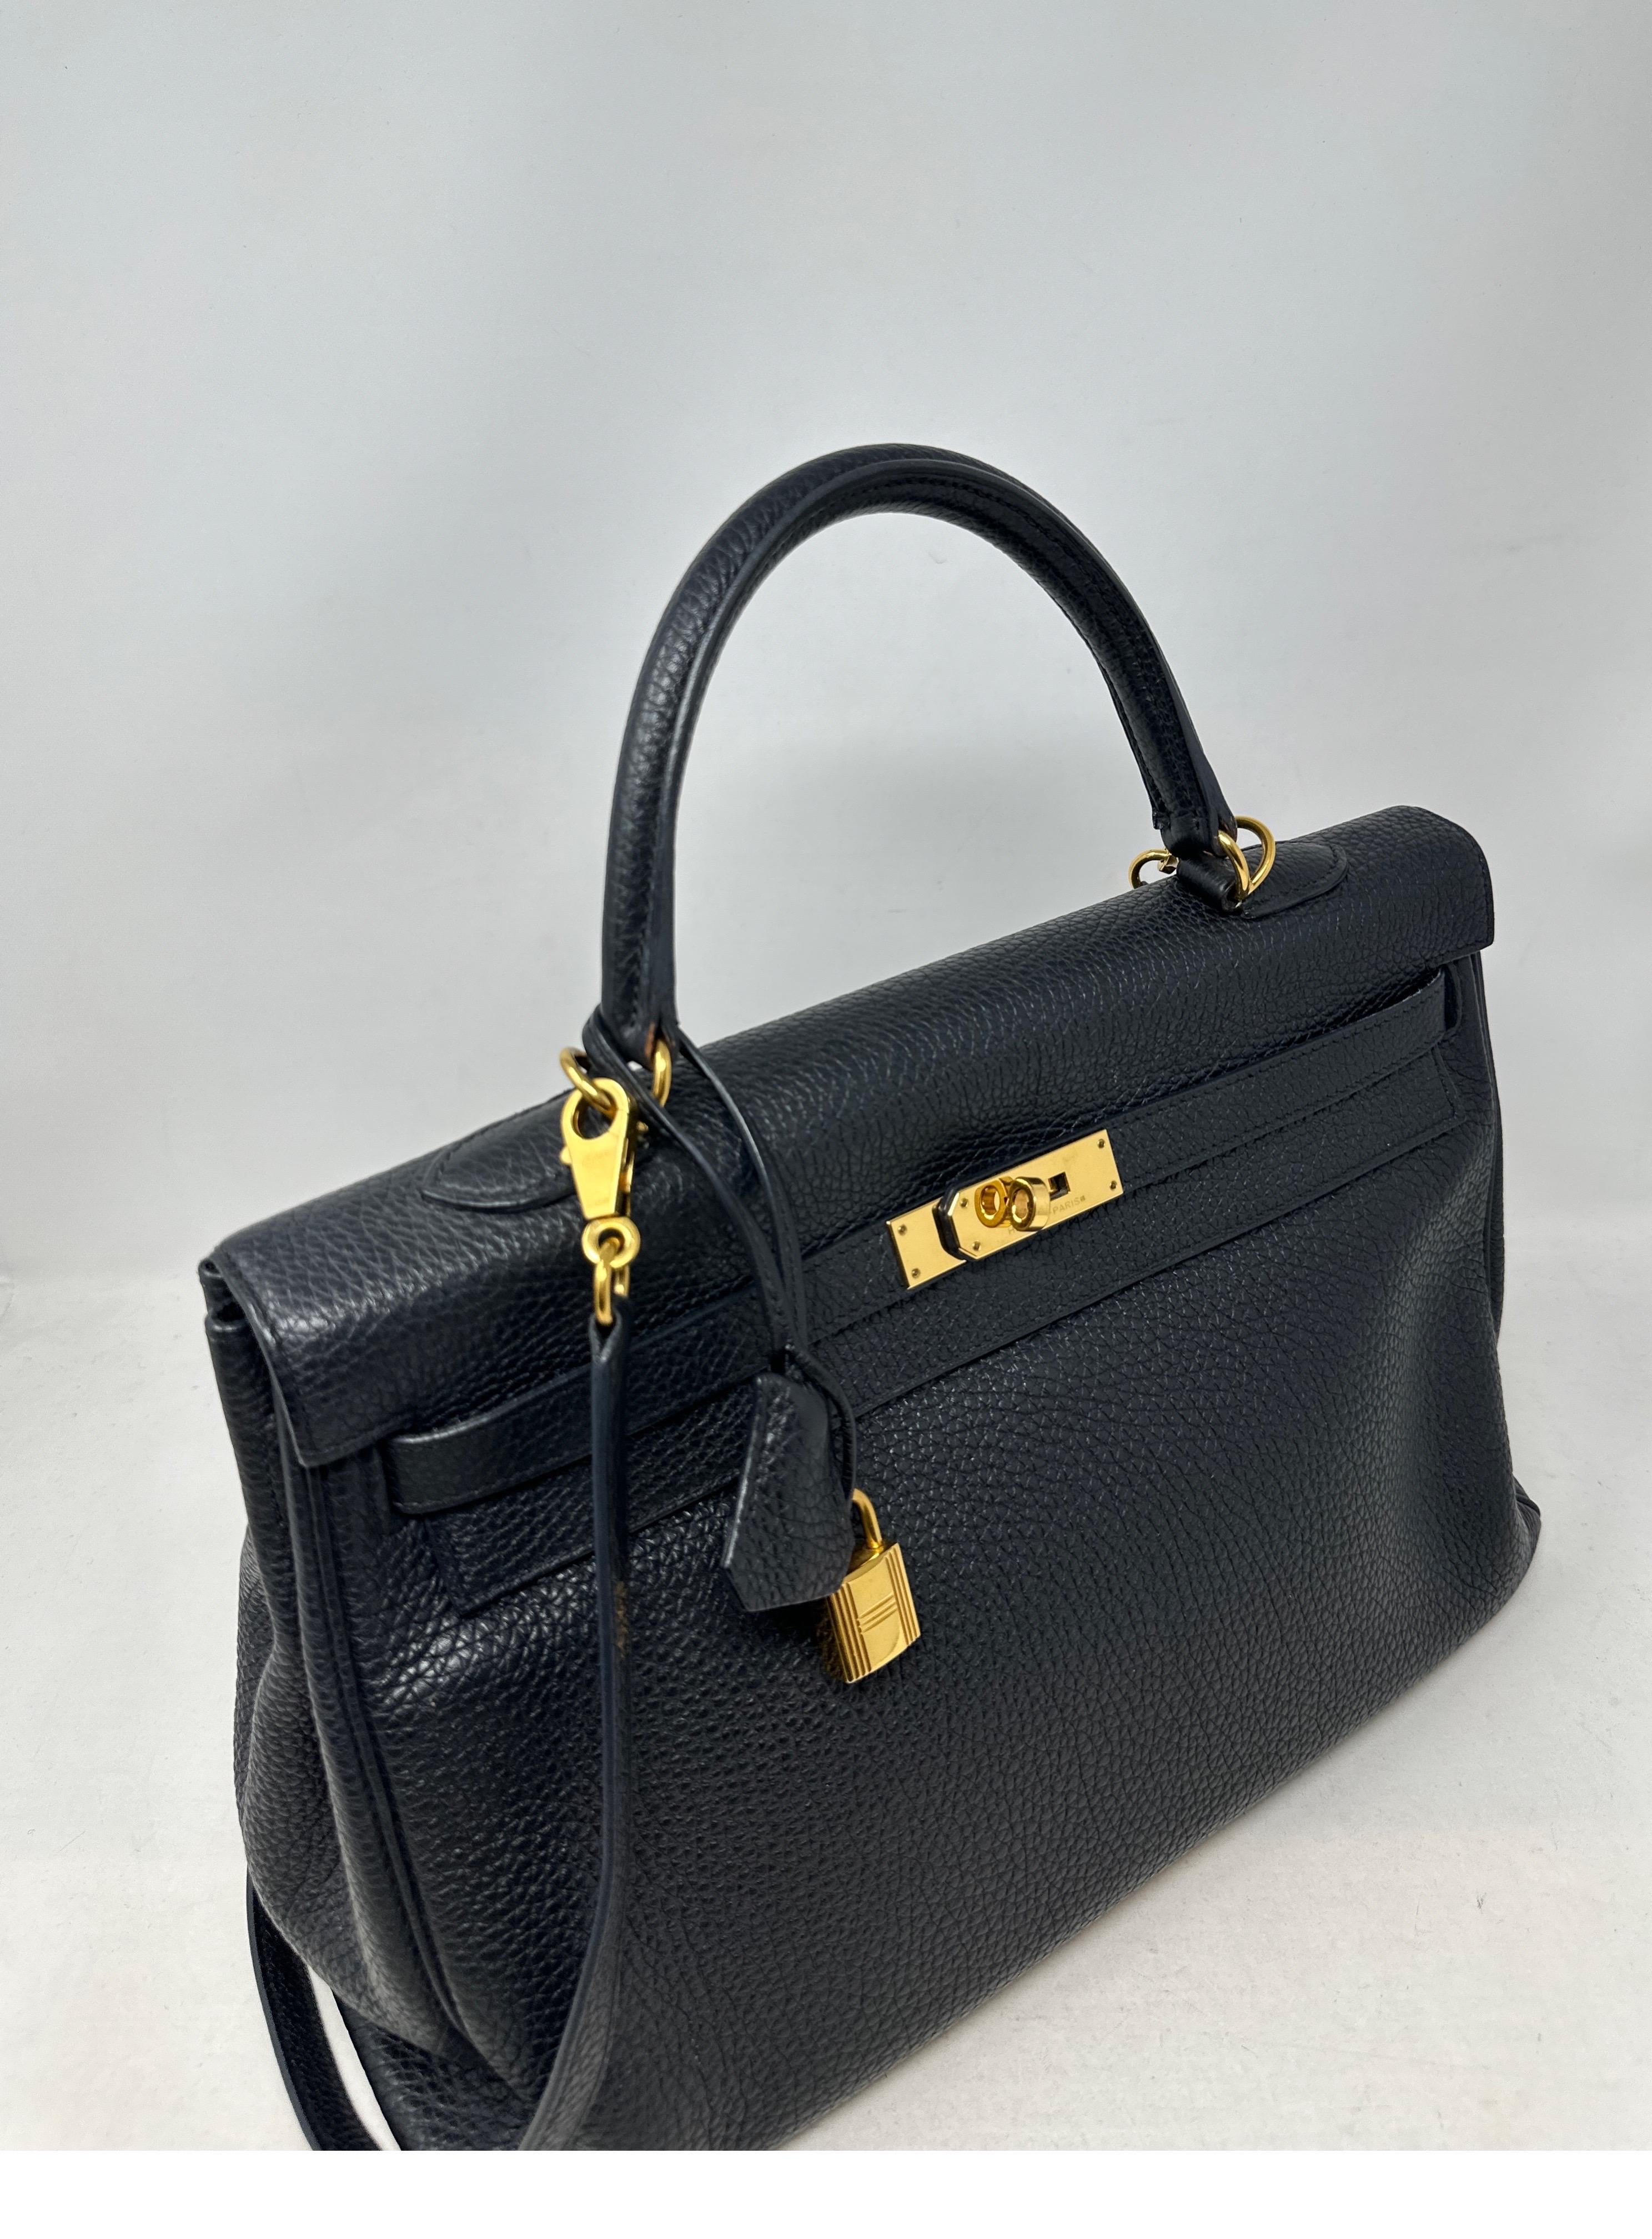 Schwarze Kelly 35 Tasche von Hermès  für Damen oder Herren im Angebot